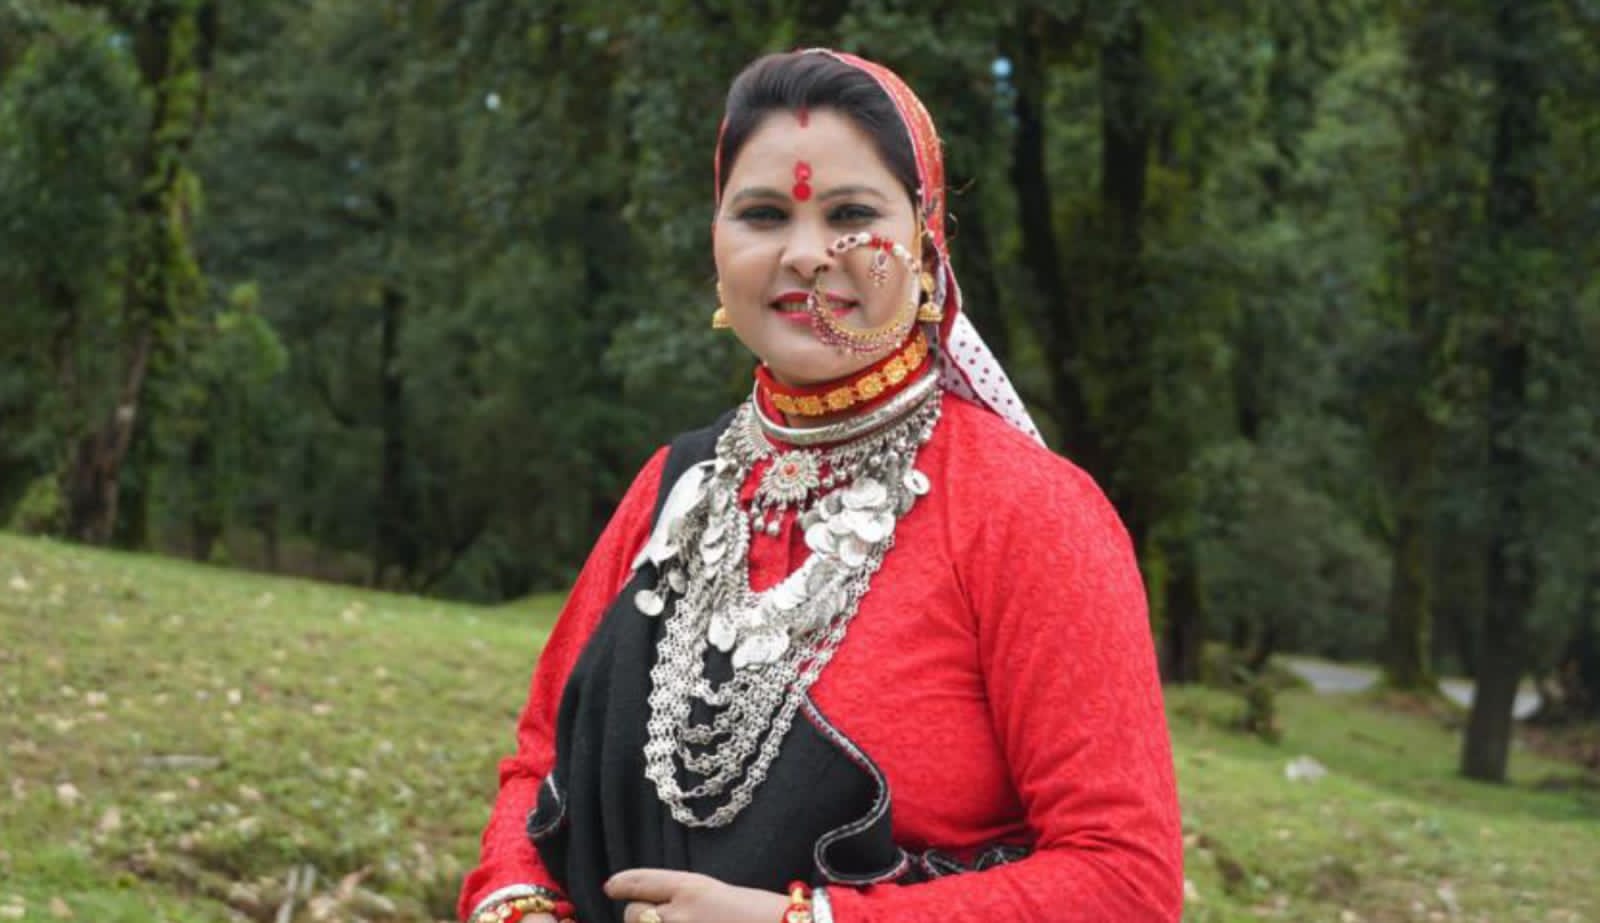 Uttarakhand Folksinger Hema Negi Karasi Biography | Songs | Photos | Age | Jagar. Hema Negi Karasi Biography